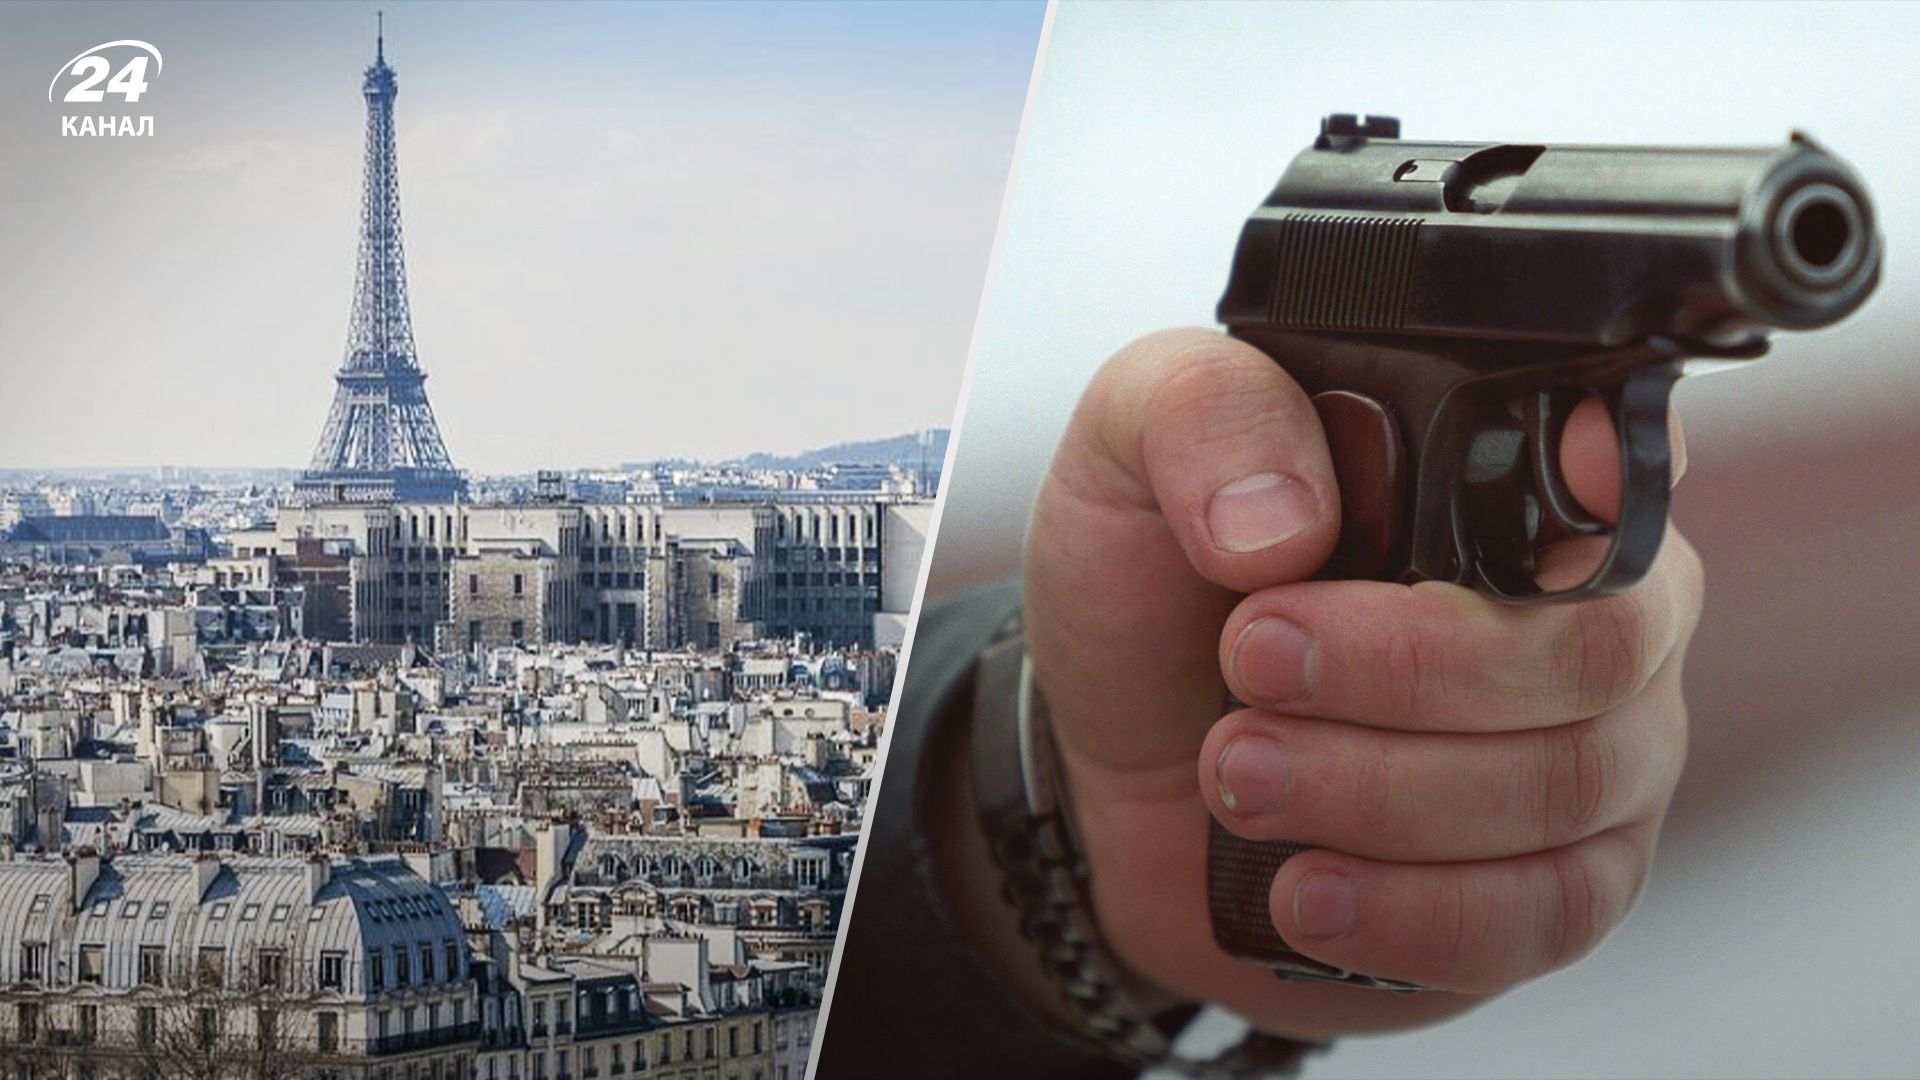 В Париже 69-летний мужчина устроил стрельбу: есть погибшие и раненые - 24 Канал